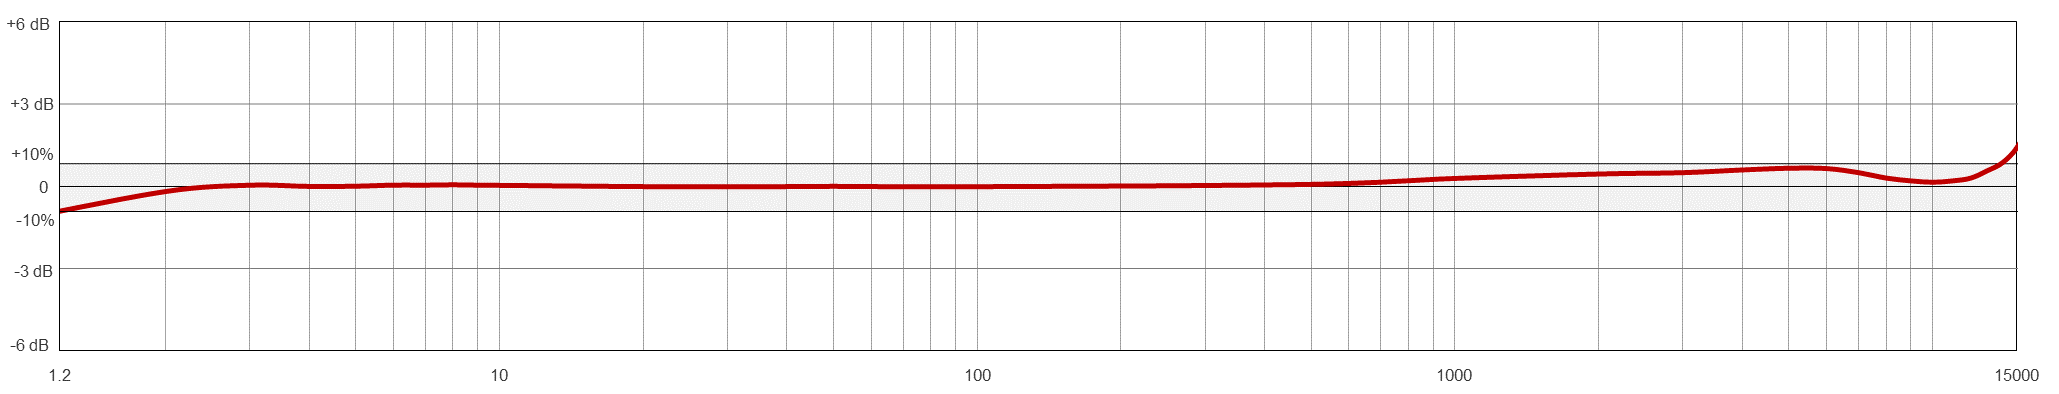 TA911 典型频率响应